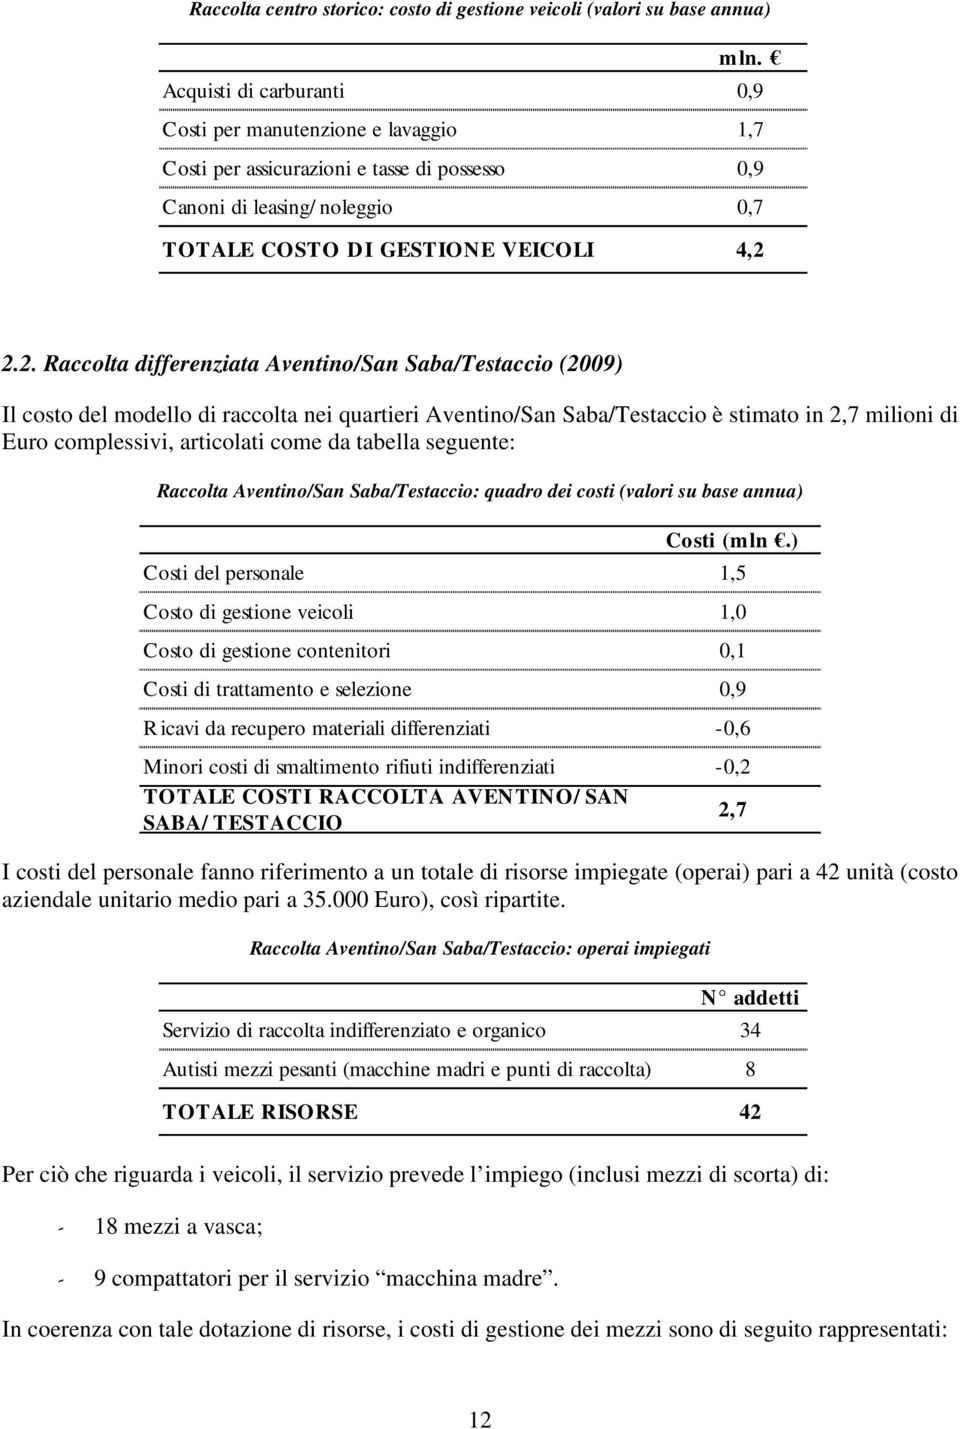 2.2. Raccolta differenziata Aventino/San Saba/Testaccio () Il costo del modello di raccolta nei quartieri Aventino/San Saba/Testaccio è stimato in 2,7 milioni di Euro complessivi, articolati come da